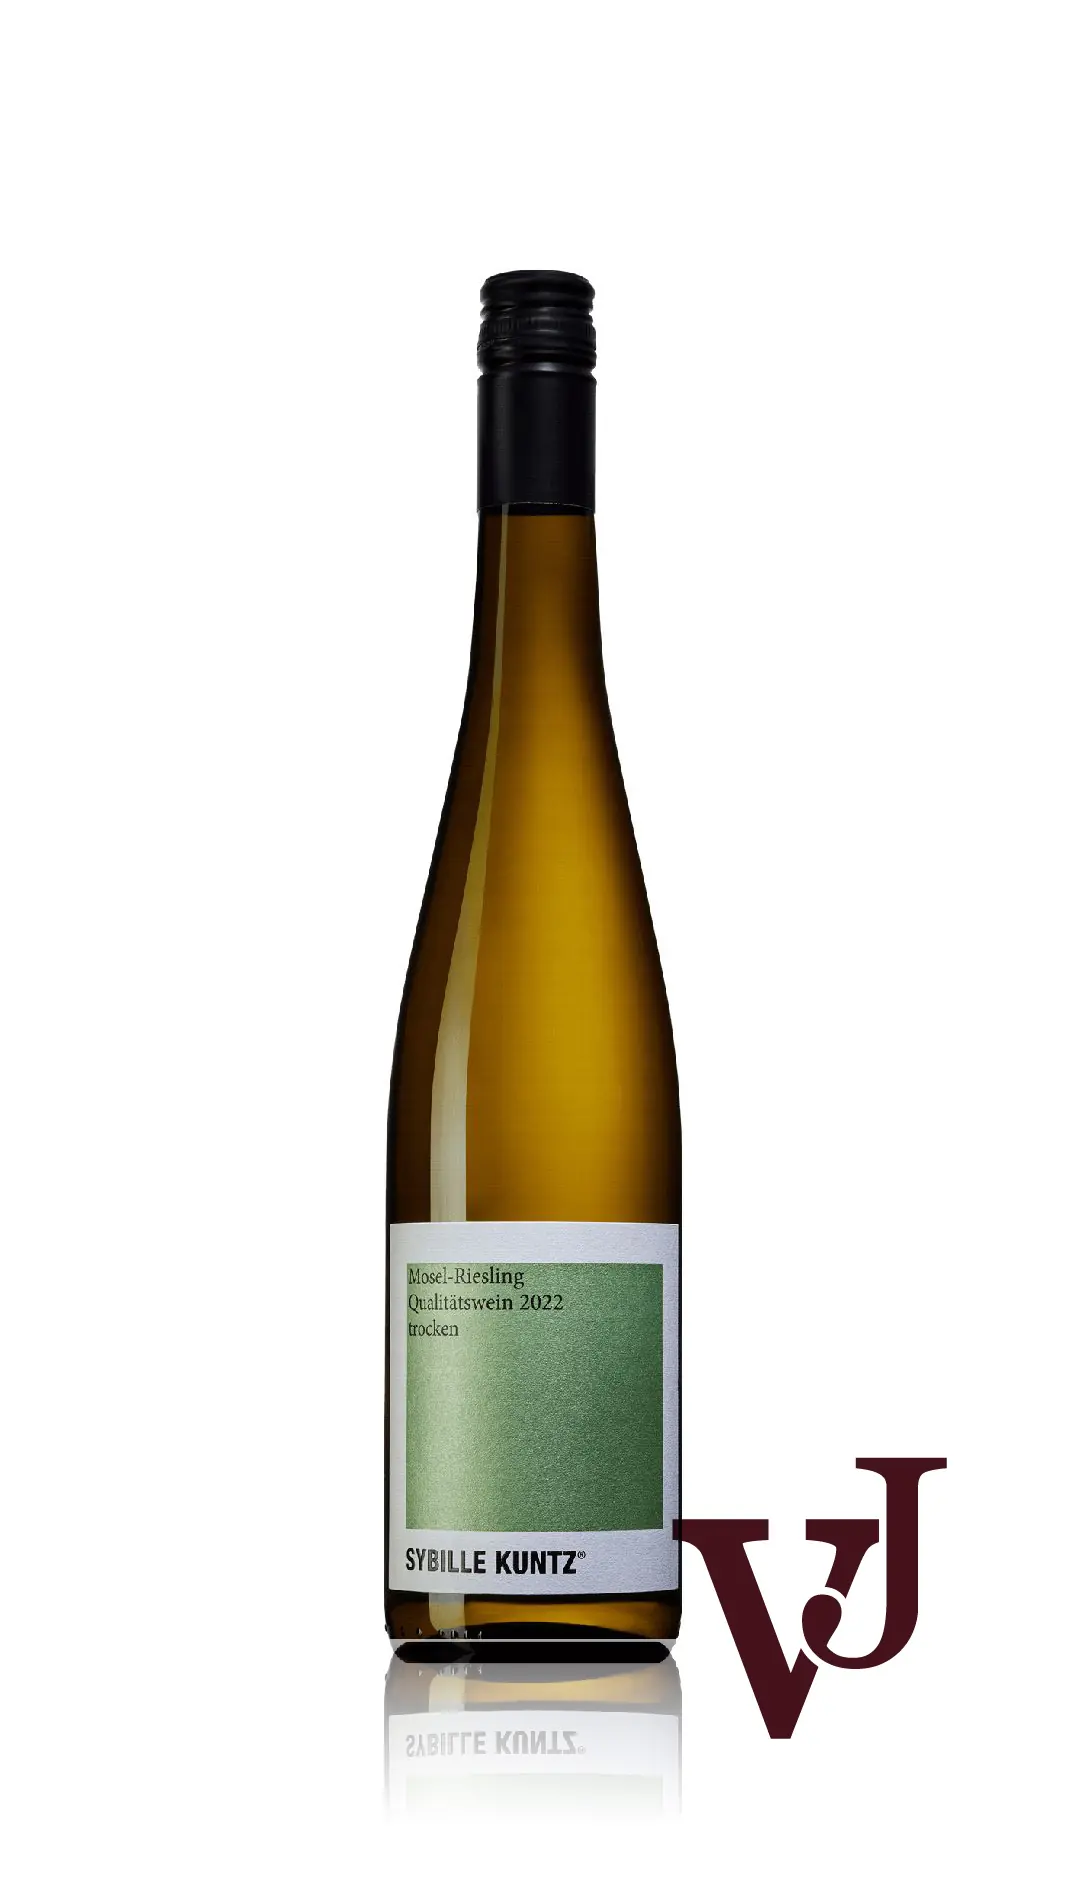 Vitt Vin - Sybille Kuntz Riesling Qualitätswein trocken 2022 artikel nummer 9502501 från producenten Weingut Sybille Kuntz från området Tyskland - Vinjournalen.se